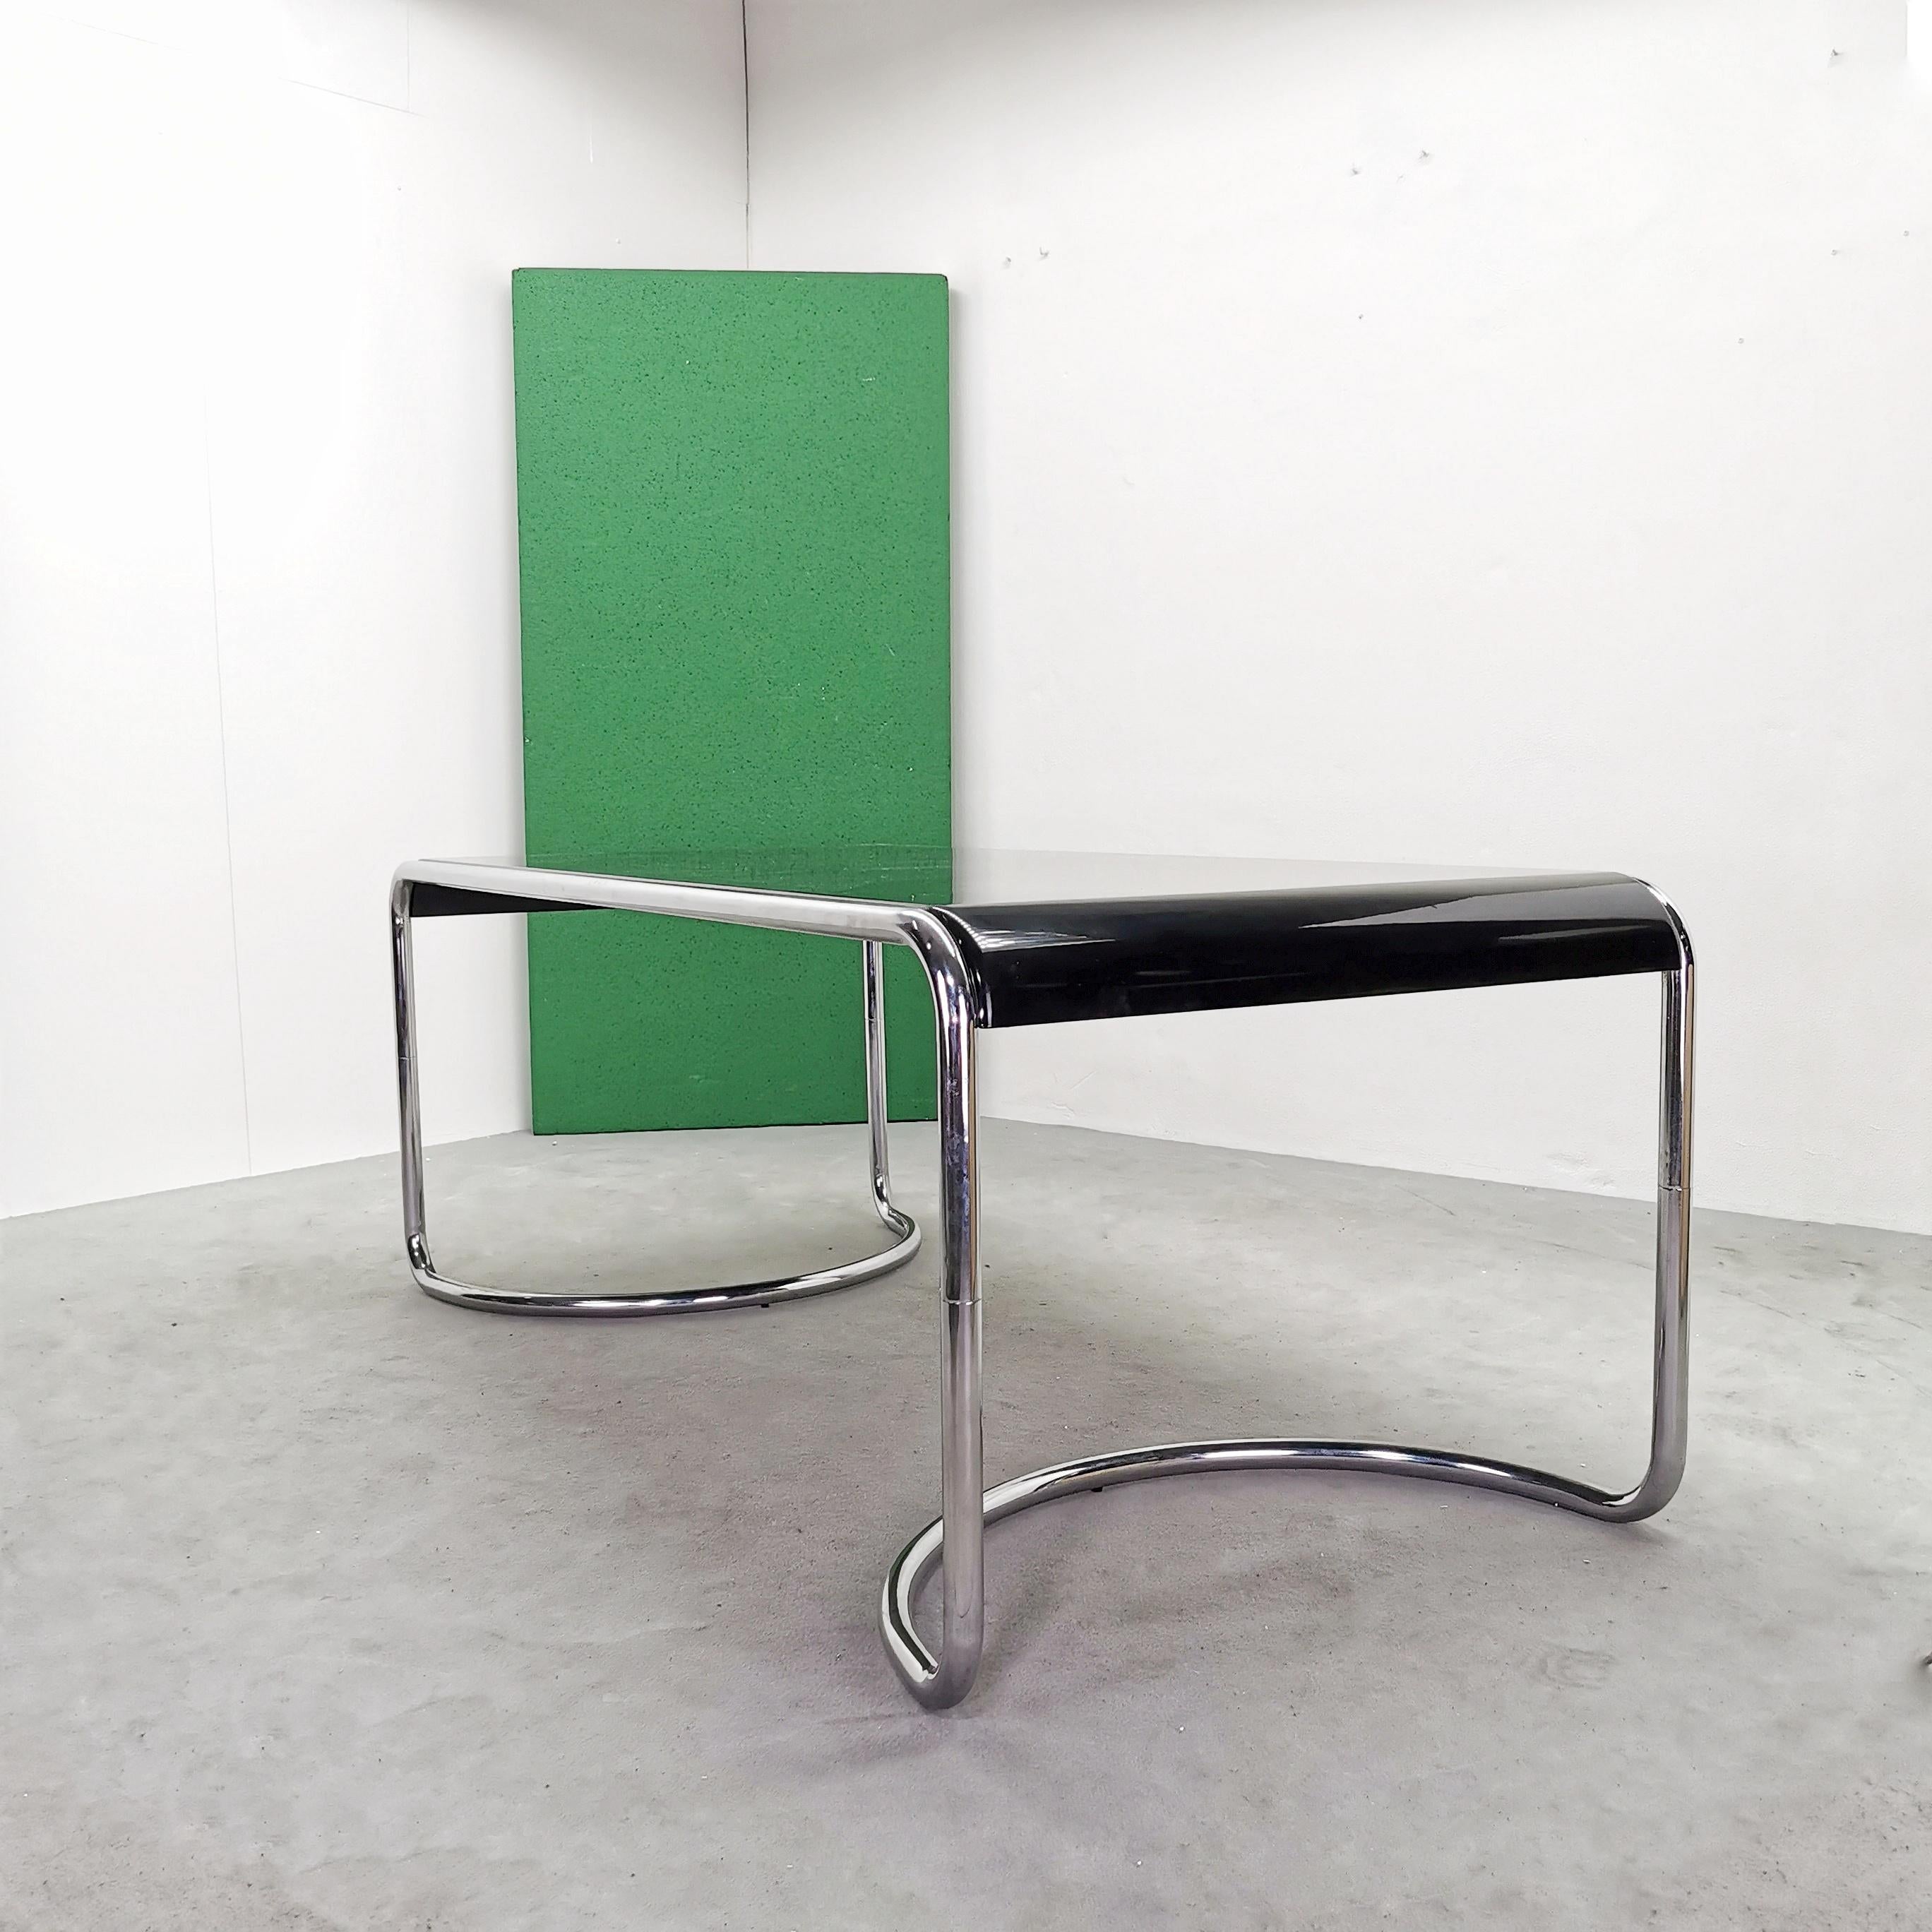 Seltener Schreibtisch, Modell Febo, entworfen 1970 von G. Stoppino für Driade. Verchromtes Rohrgestell und lackierte, gebogene Holzplatte. 
Der Tisch ist in sehr gutem Zustand
die Chromstruktur weist keine Mängel auf
die Platte weist einige